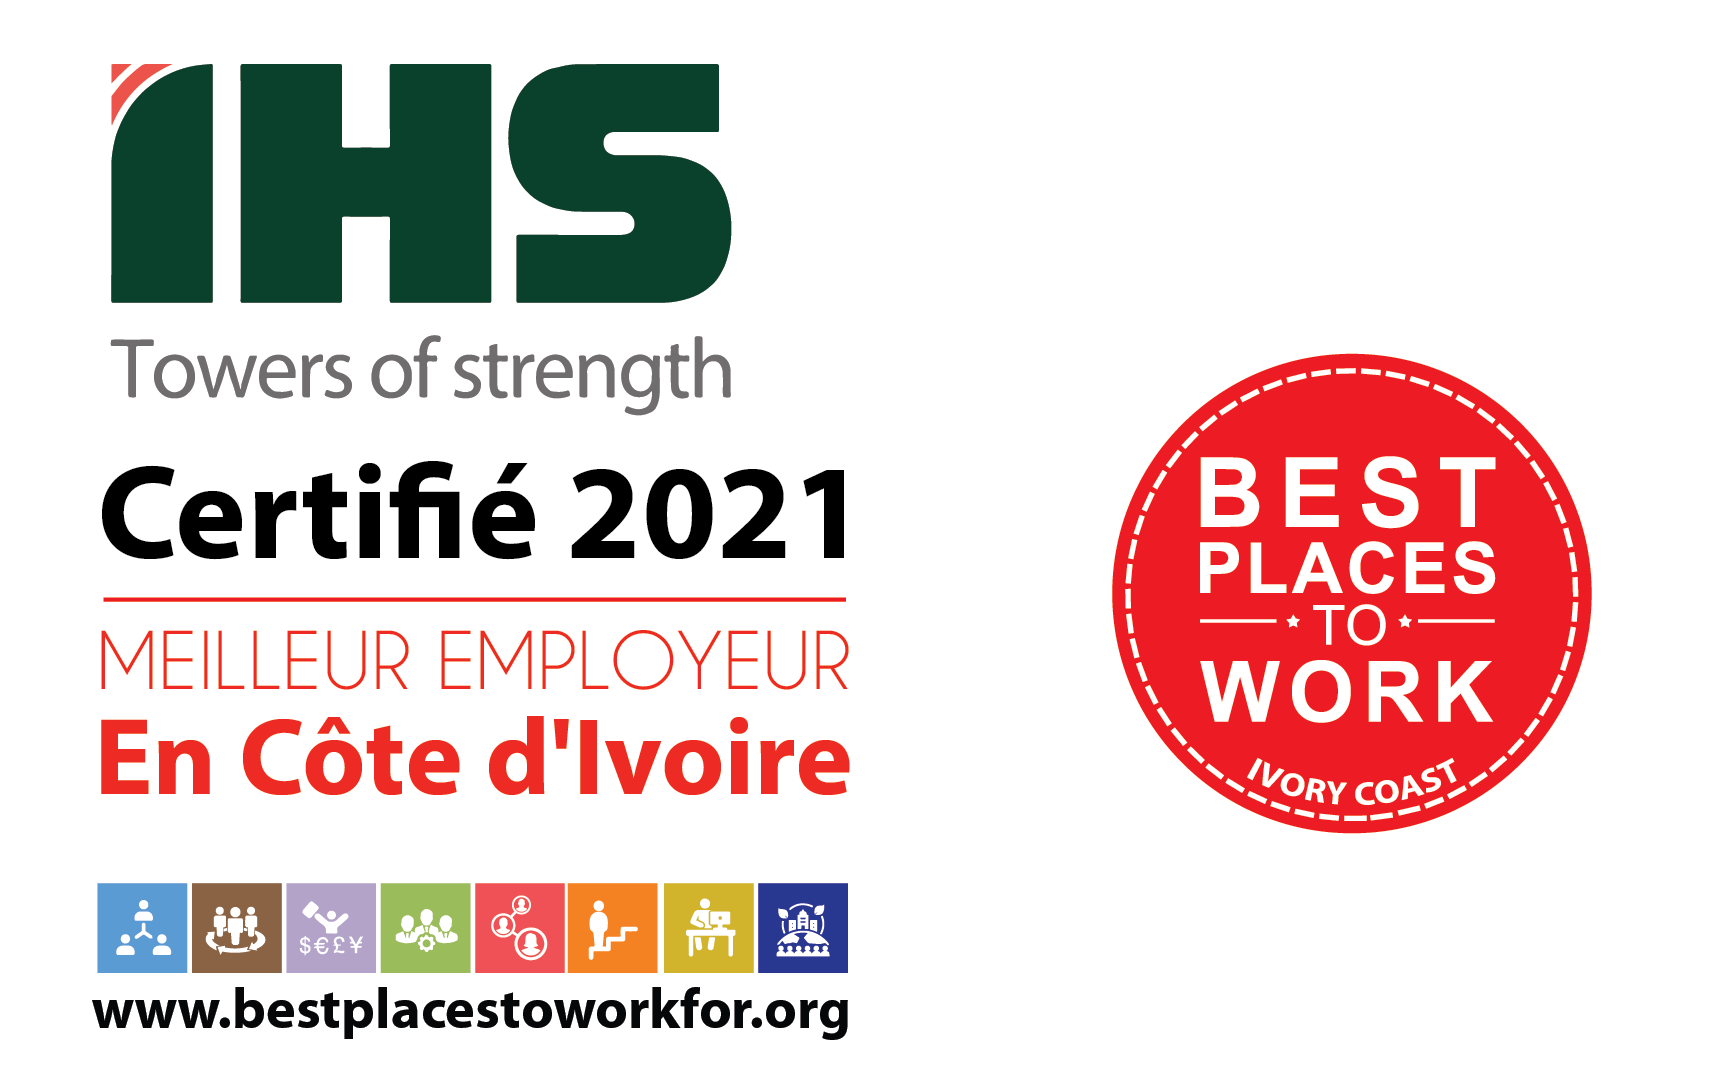 Best Places to Work: IHS Towers certifié meilleur employeur de l’année 2021 en Côte d’ivoire.